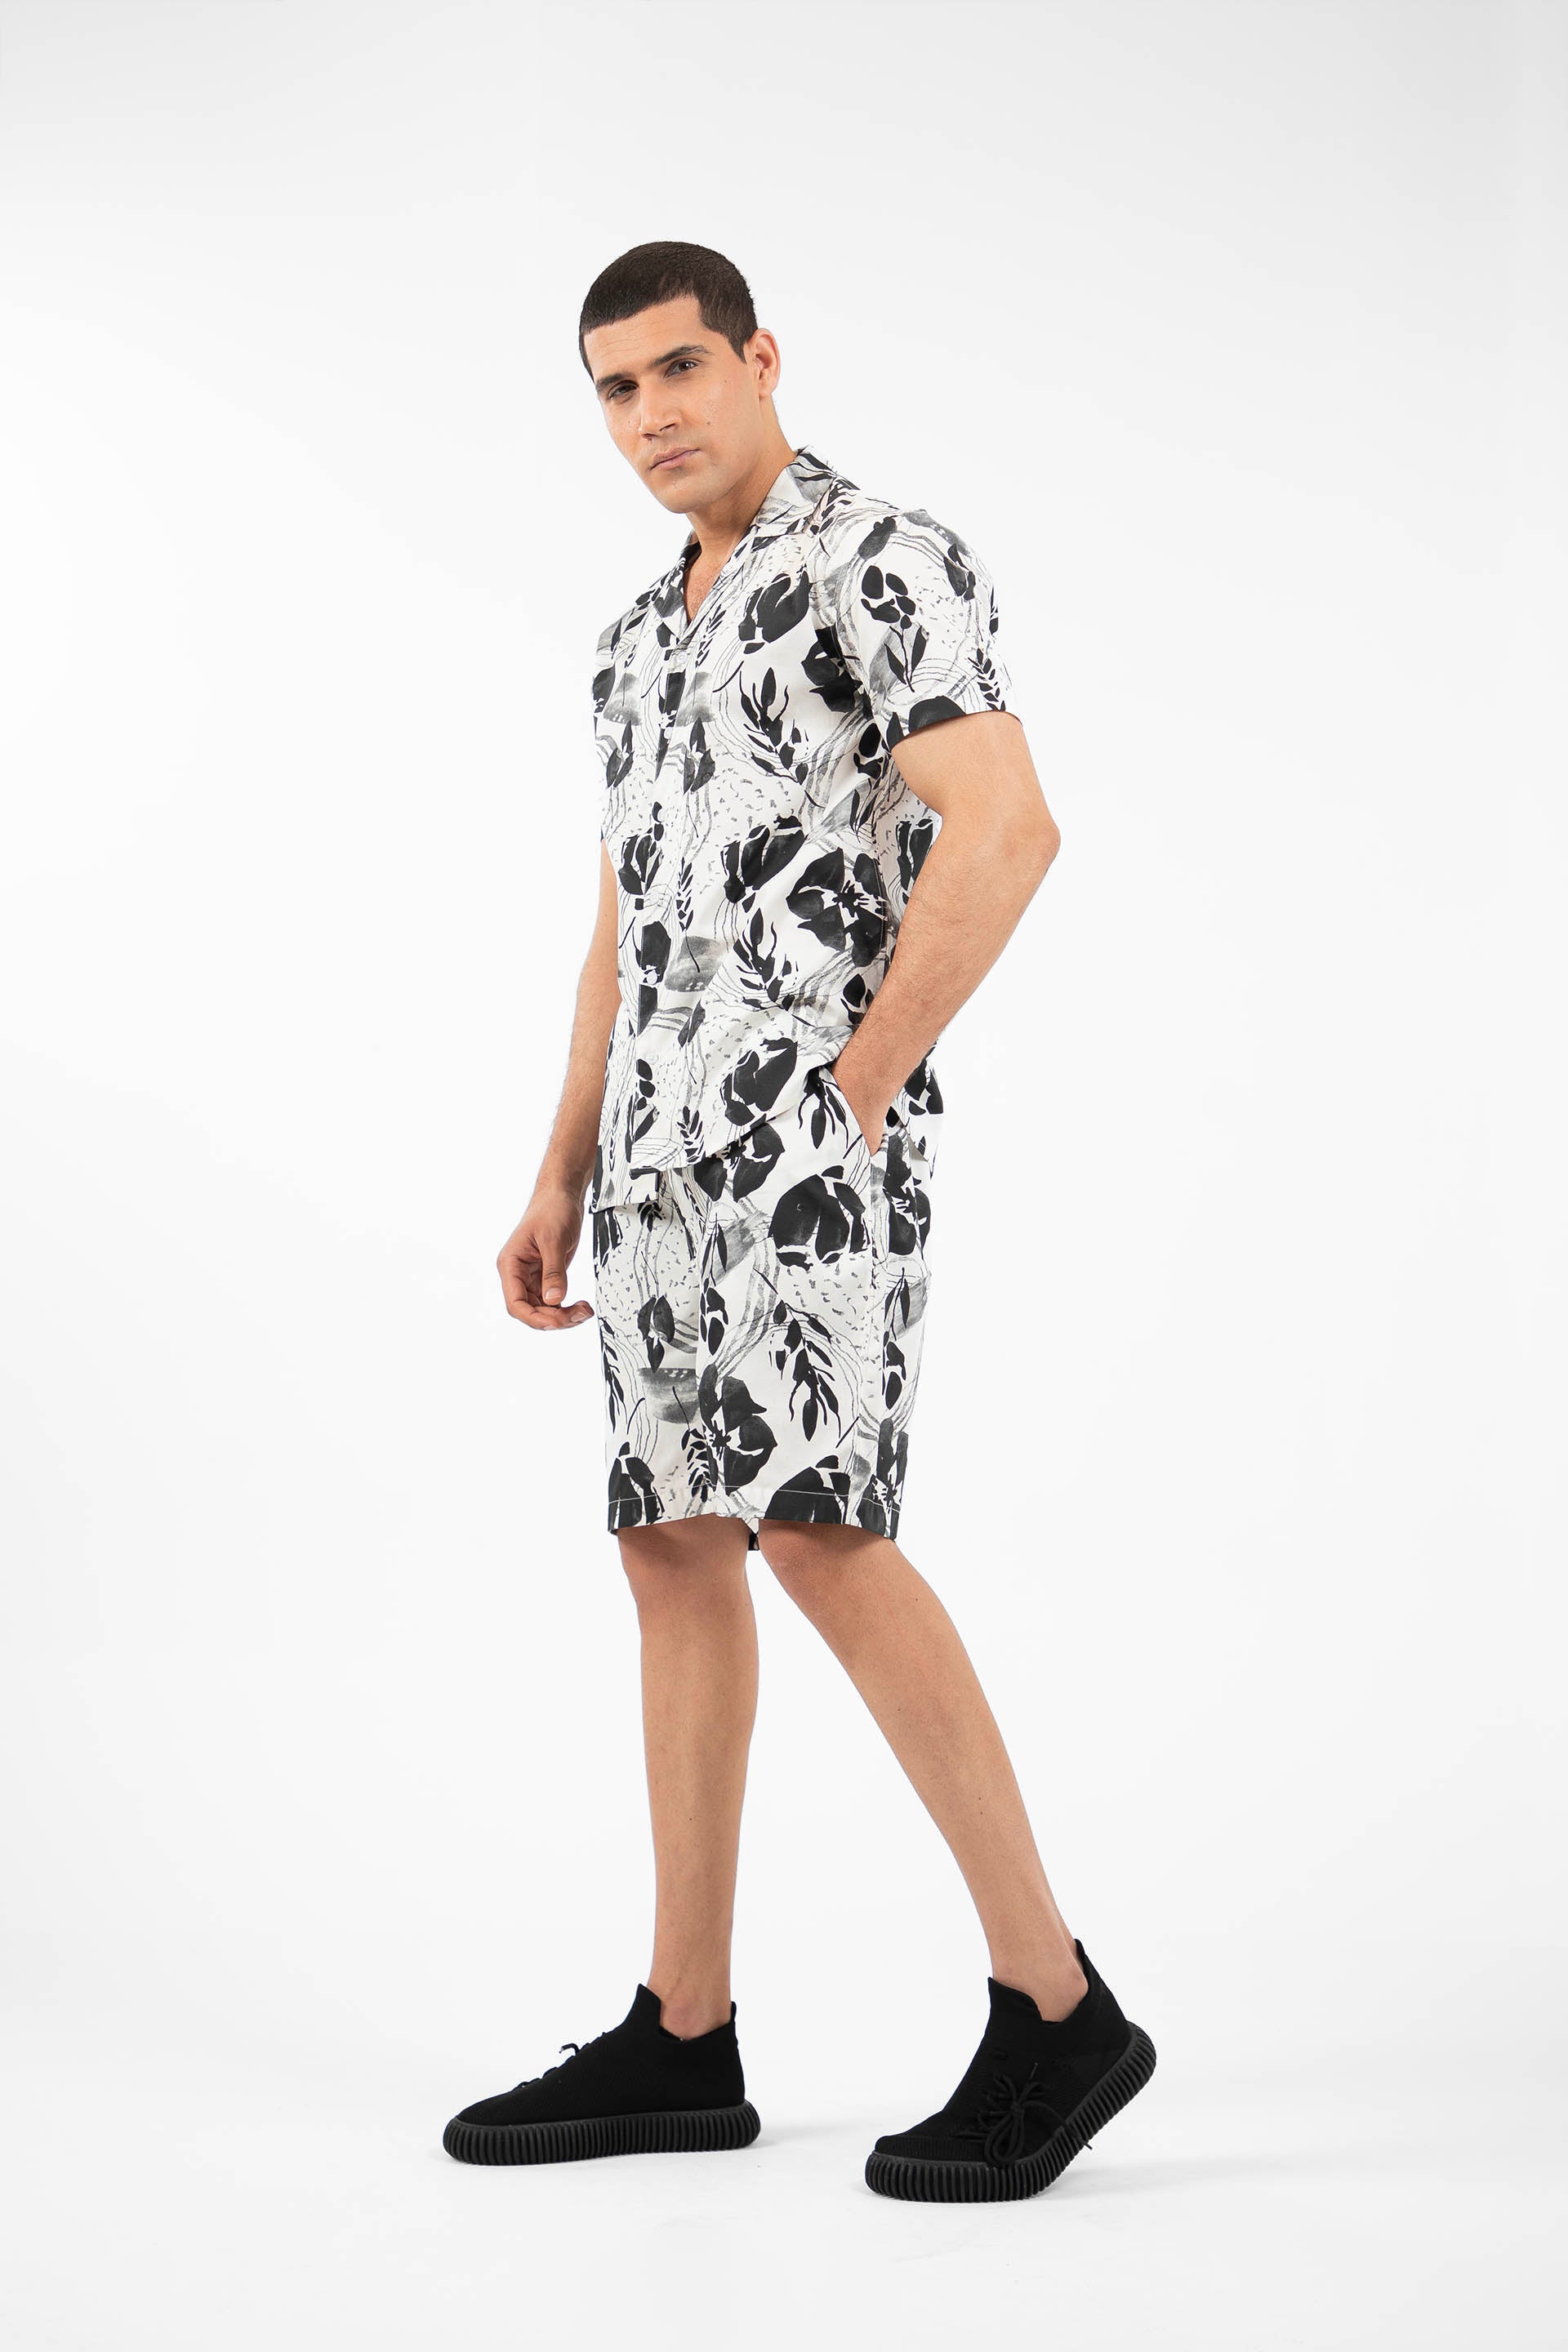 Hawaiian Shorts Black/White